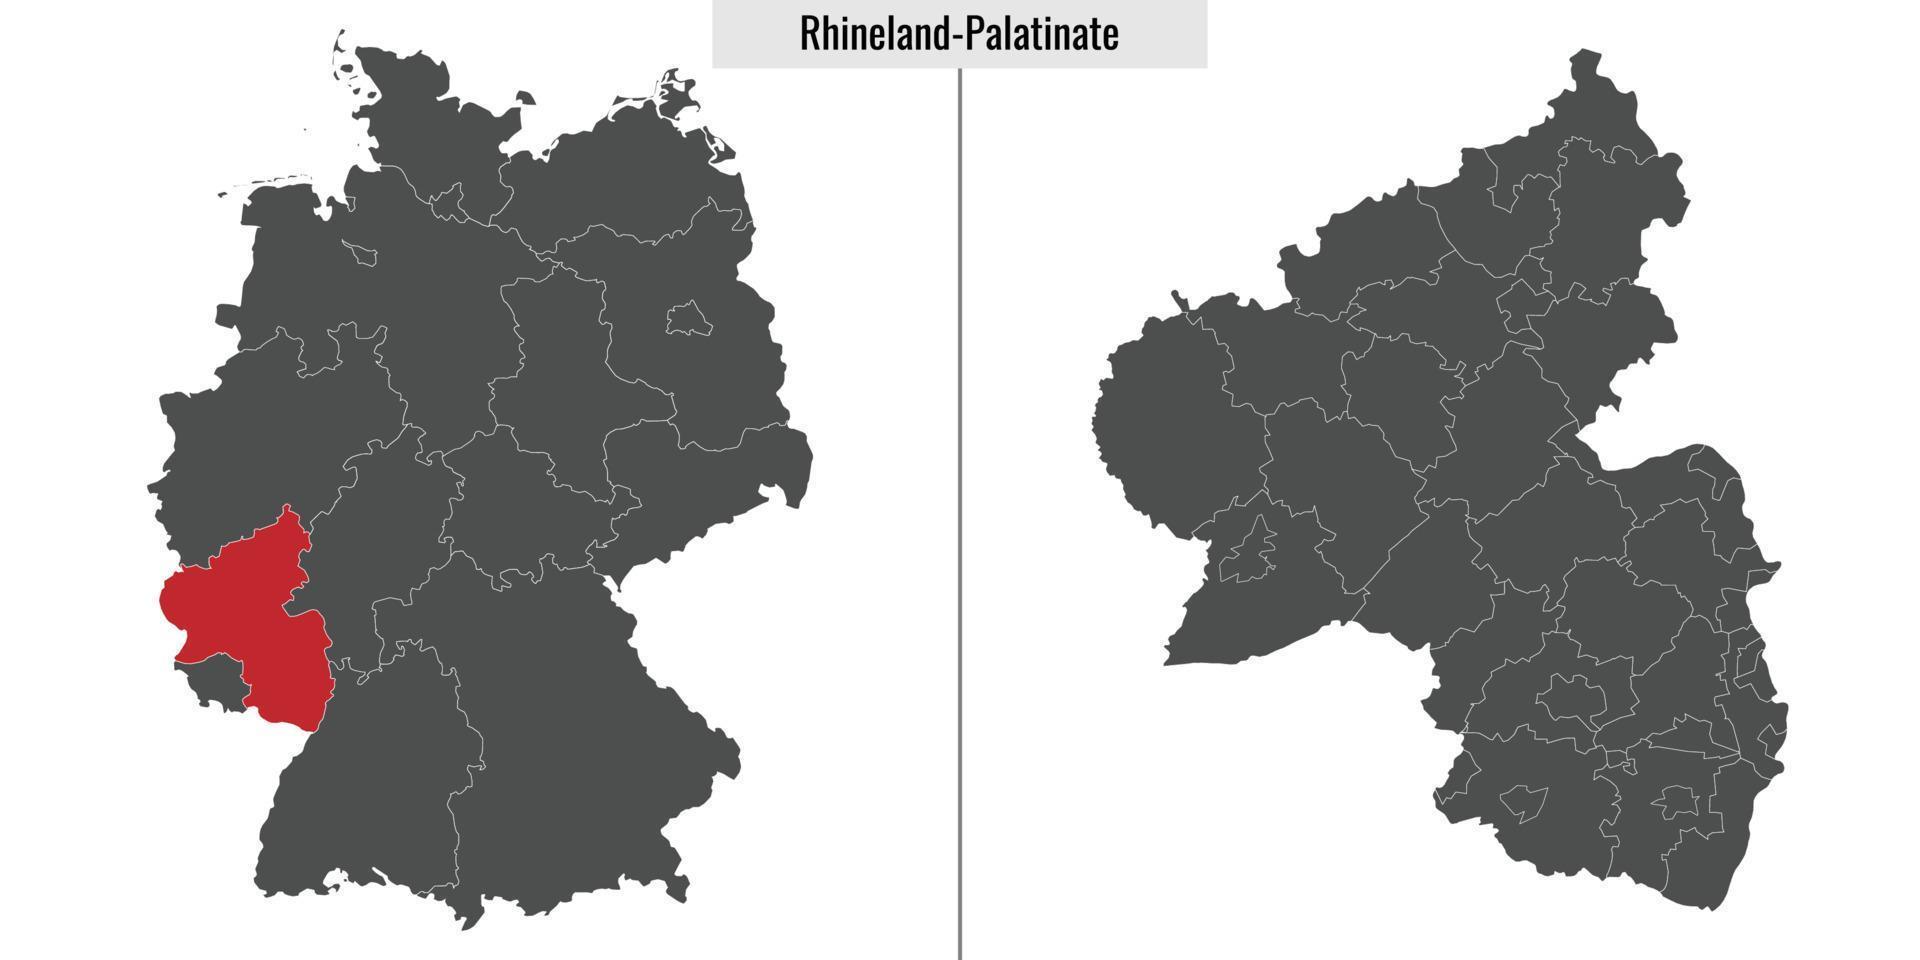 kaart staat van Duitsland vector